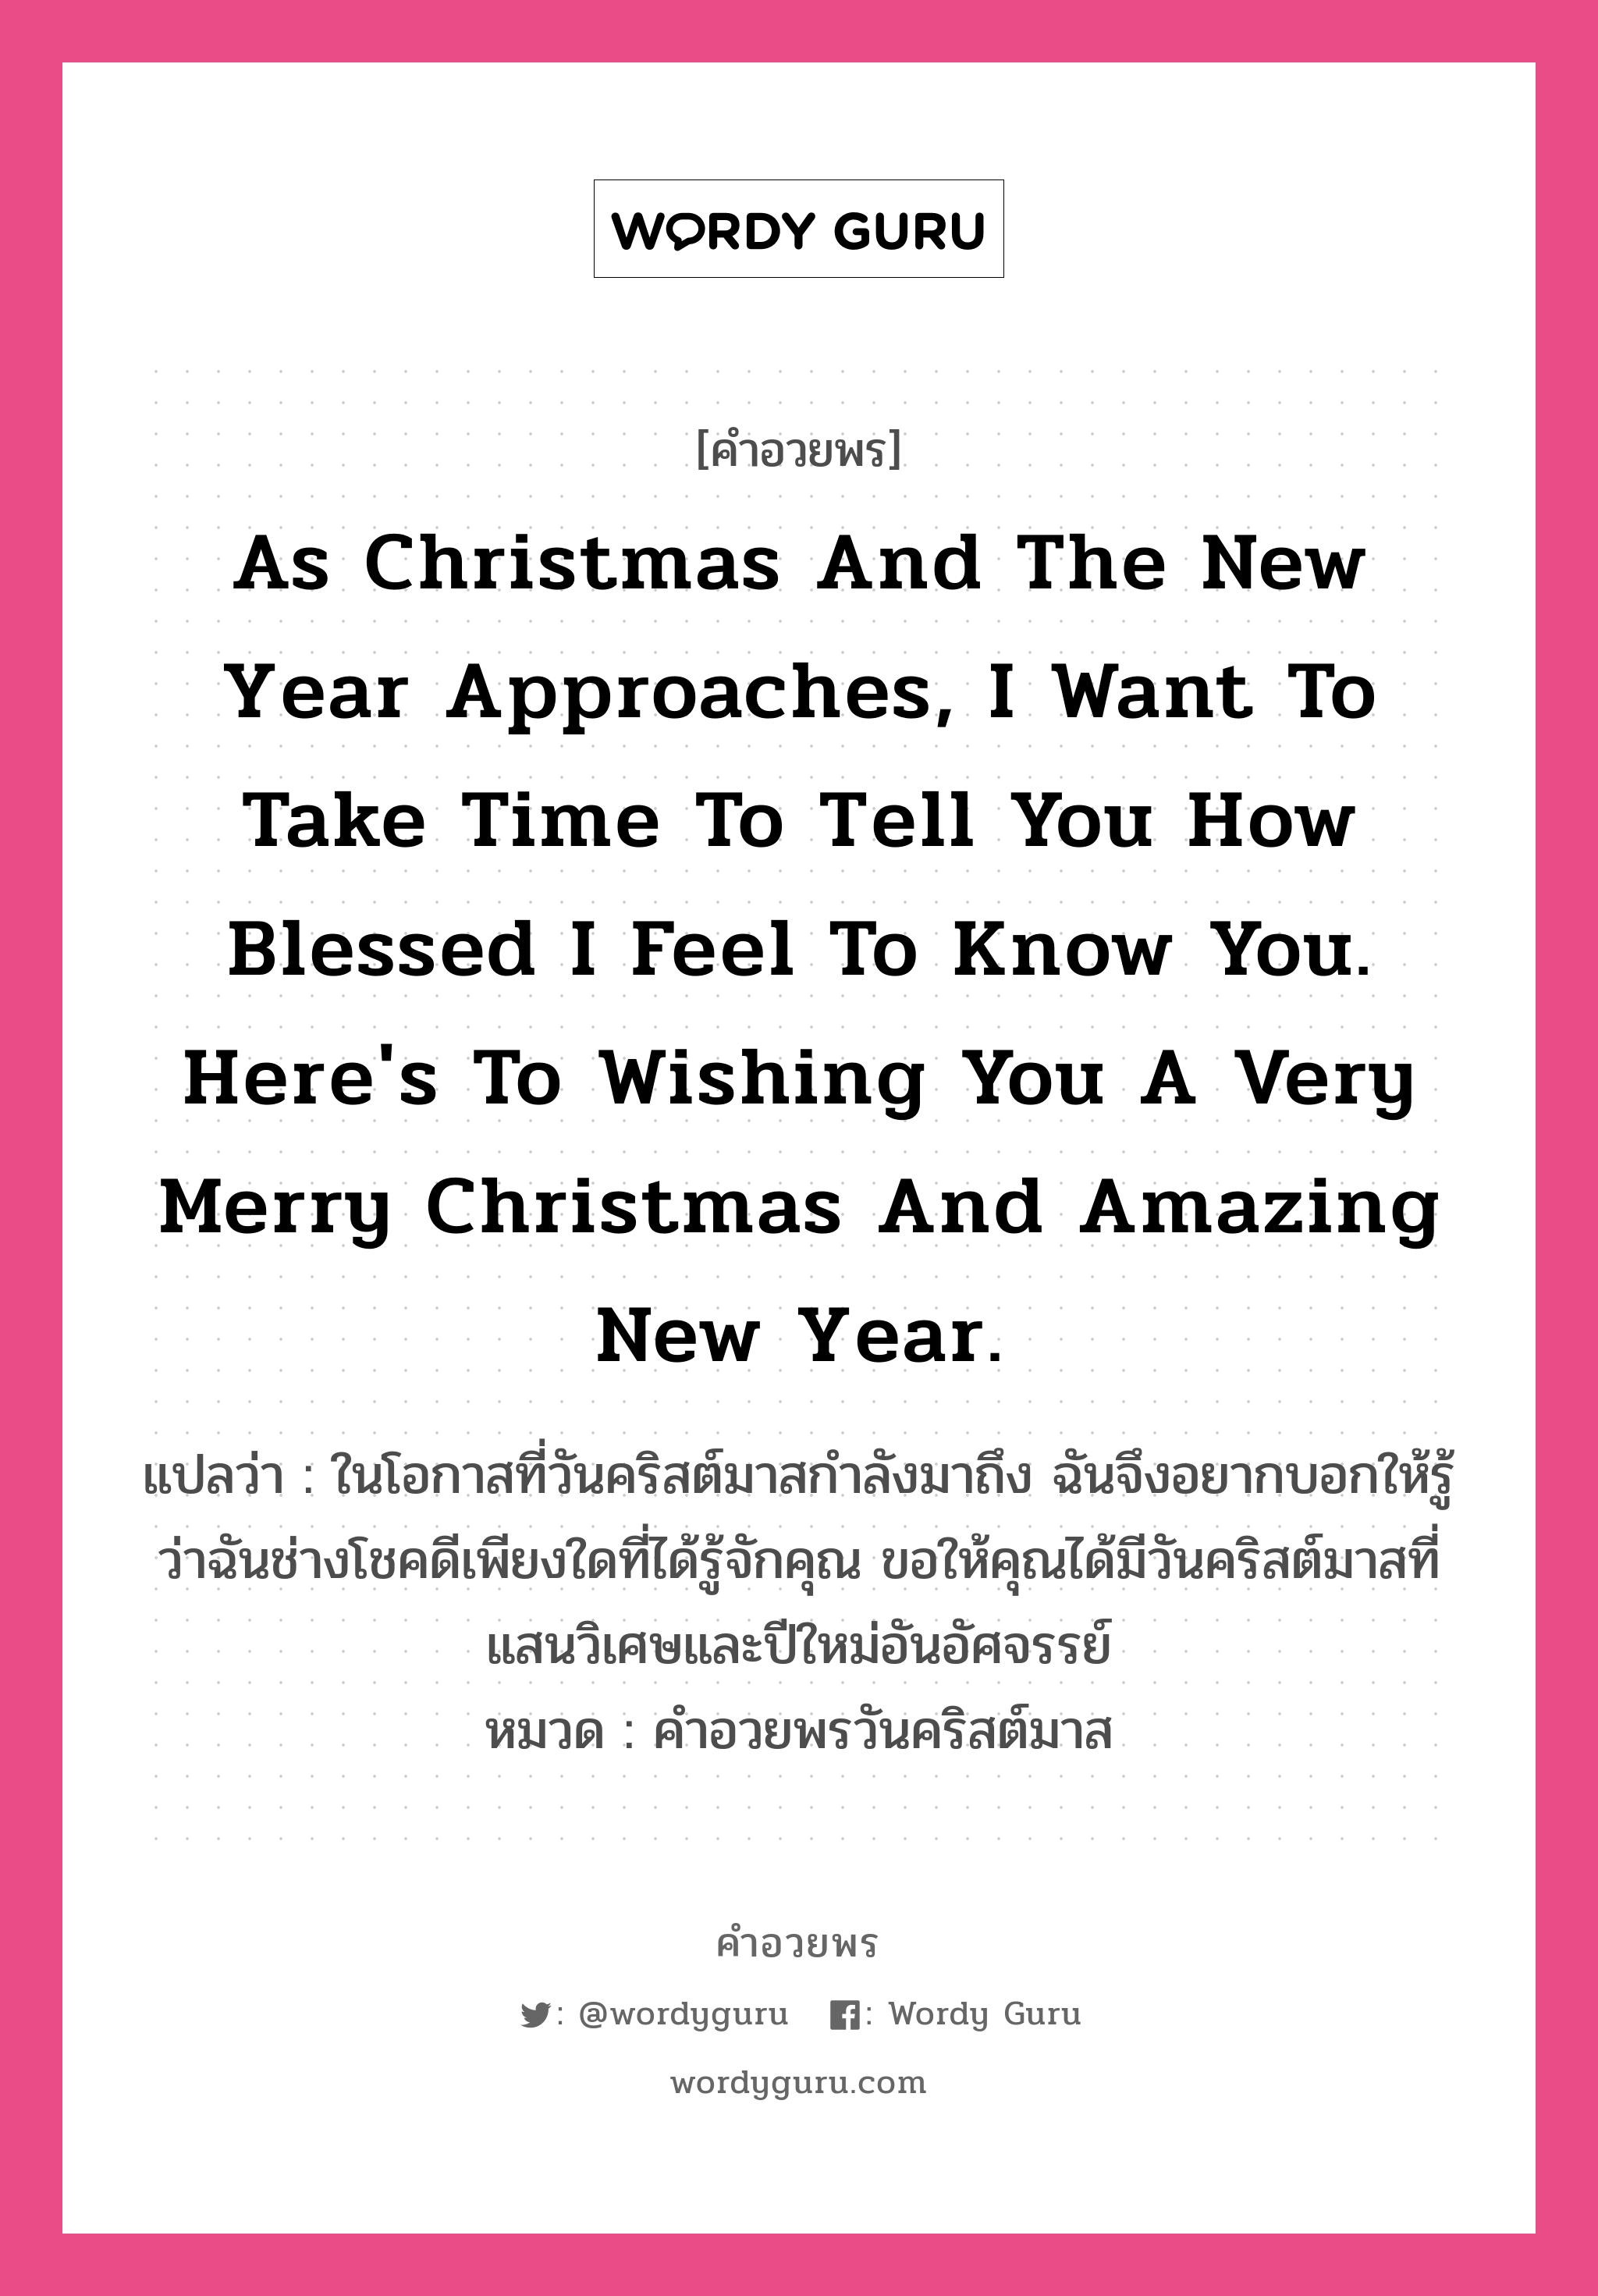 คำอวยพร As Christmas and the New Year approaches, I want to take time to tell you how blessed I feel to know you. Here's to wishing you a very Merry Christmas and amazing New Year. คืออะไร?, แปลว่า ในโอกาสที่วันคริสต์มาสกำลังมาถึง ฉันจึงอยากบอกให้รู้ว่าฉันช่างโชคดีเพียงใดที่ได้รู้จักคุณ ขอให้คุณได้มีวันคริสต์มาสที่แสนวิเศษและปีใหม่อันอัศจรรย์ หมวด คำอวยพรวันคริสต์มาส หมวด คำอวยพรวันคริสต์มาส